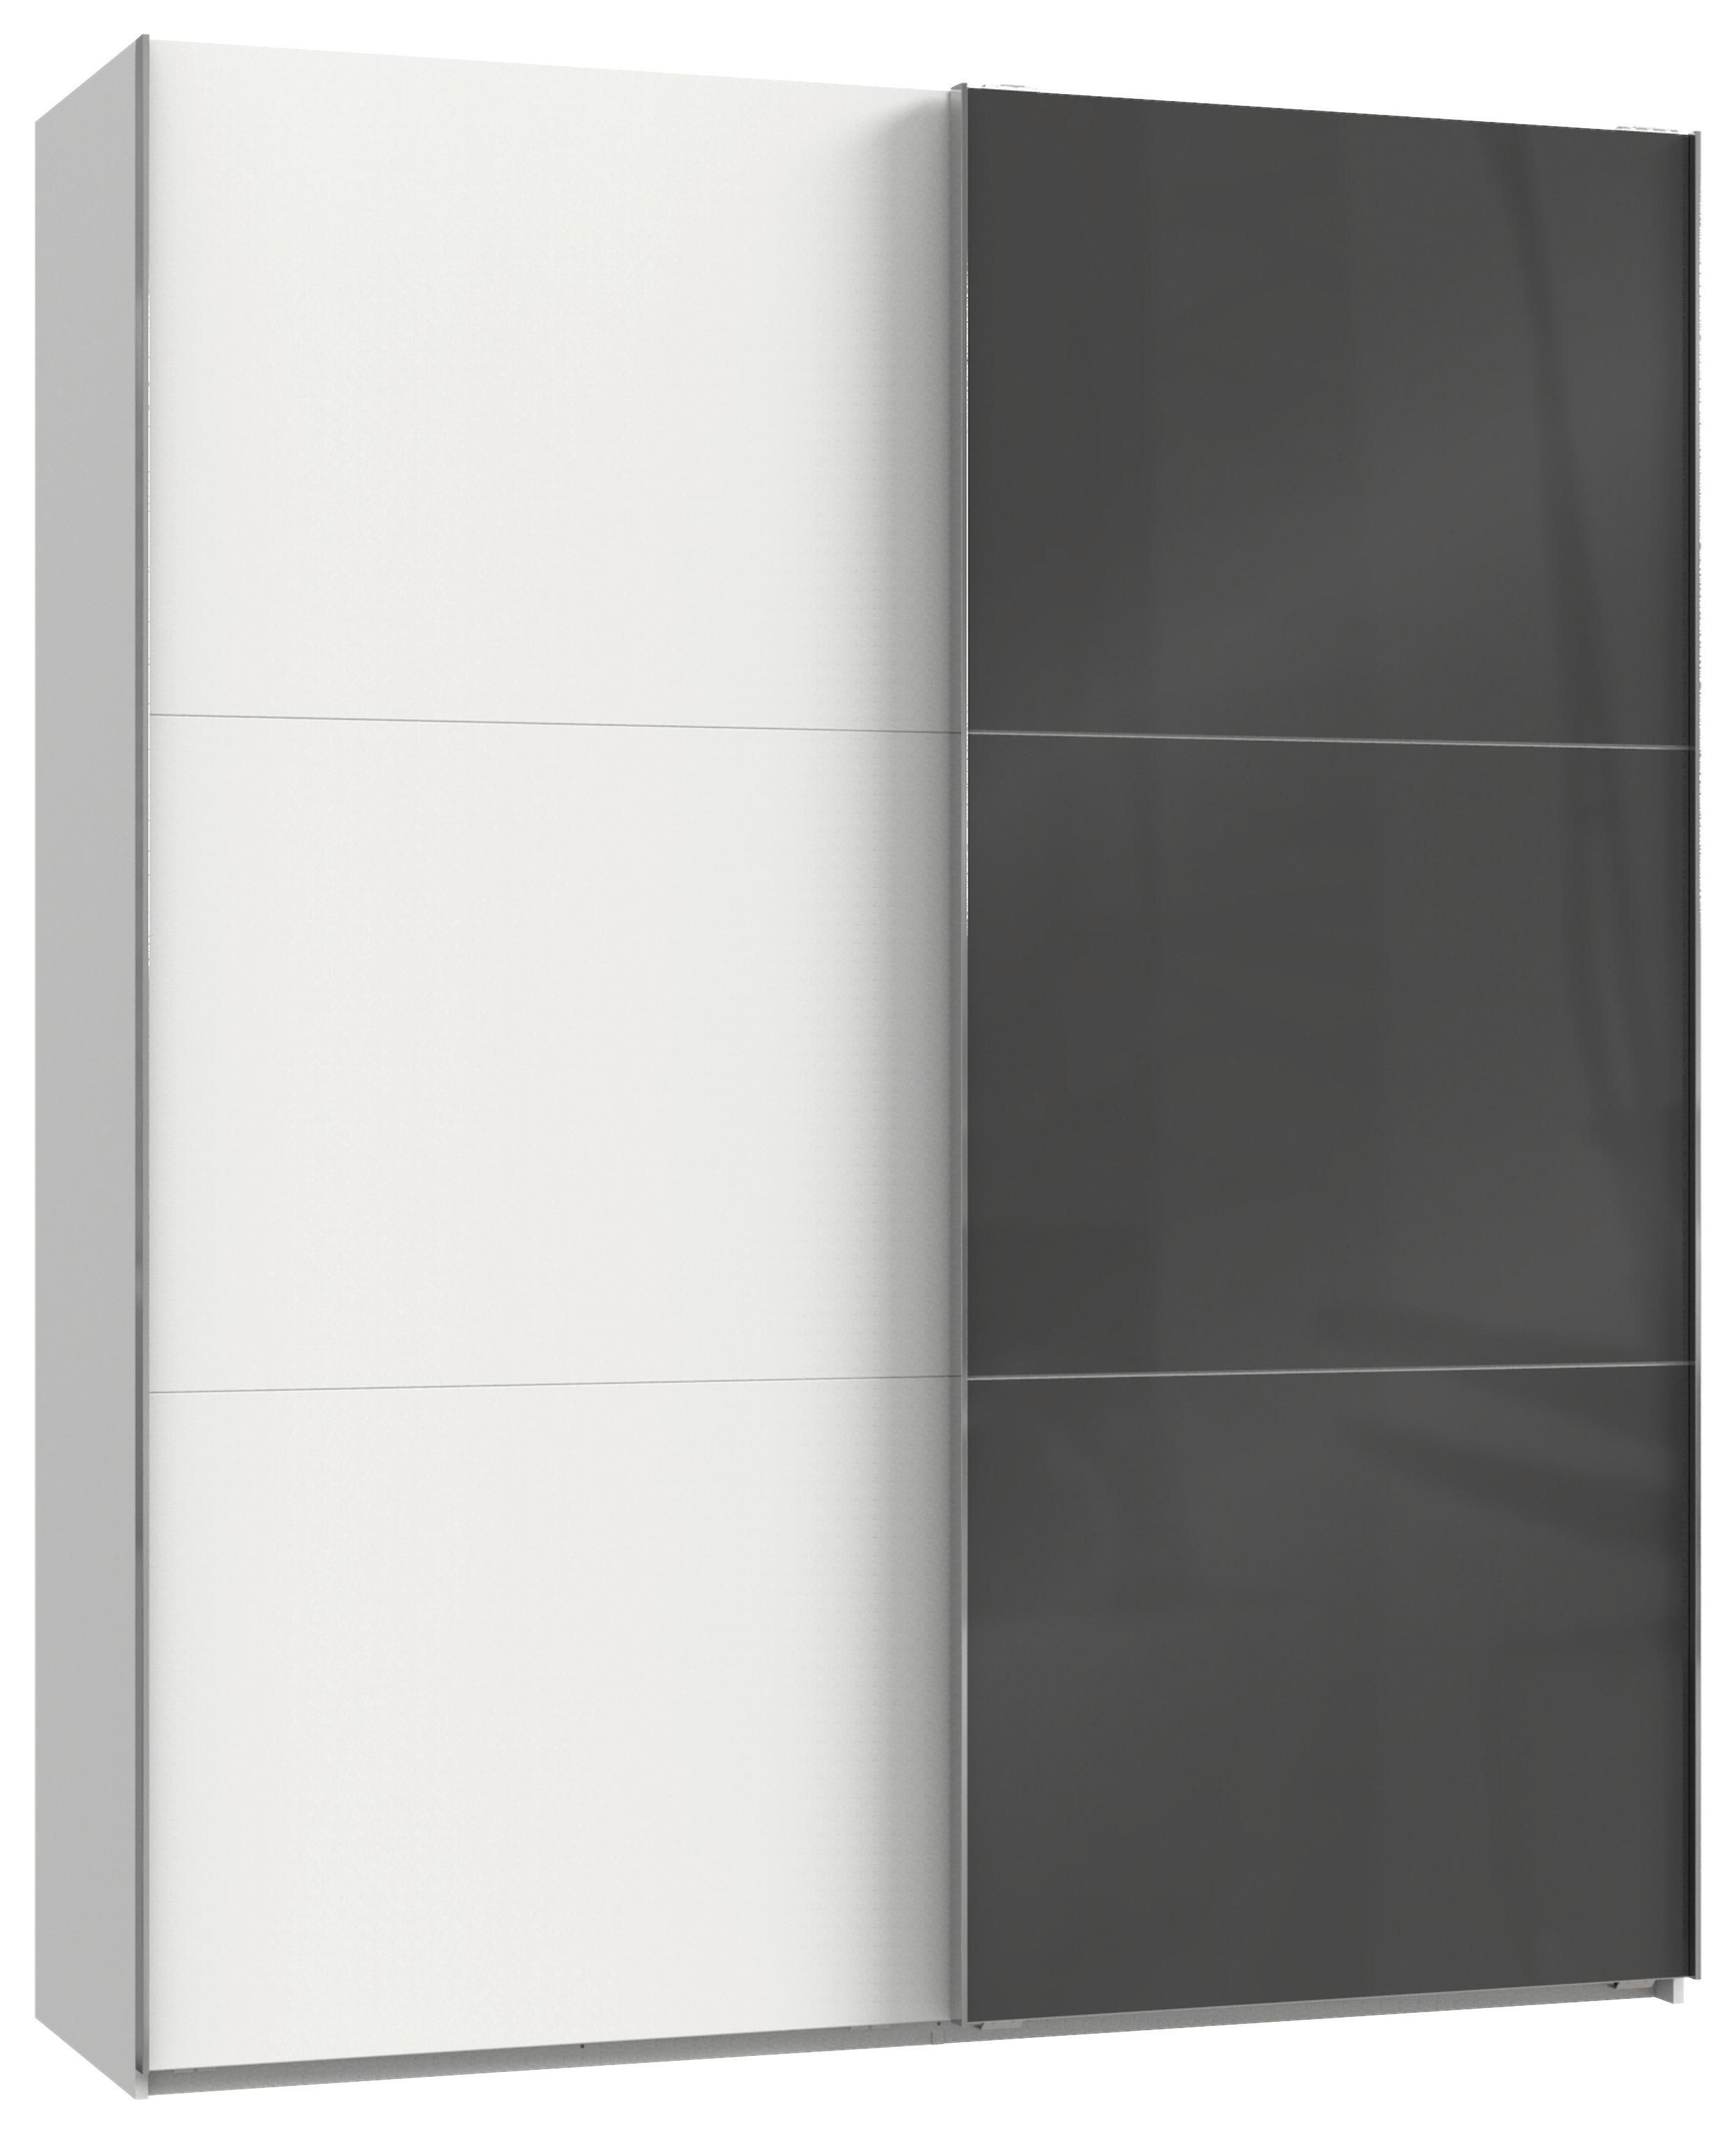 SCHWEBETÜRENSCHRANK  in Grau, Weiß  - Chromfarben/Weiß, MODERN, Holzwerkstoff (200/236/65cm) - MID.YOU